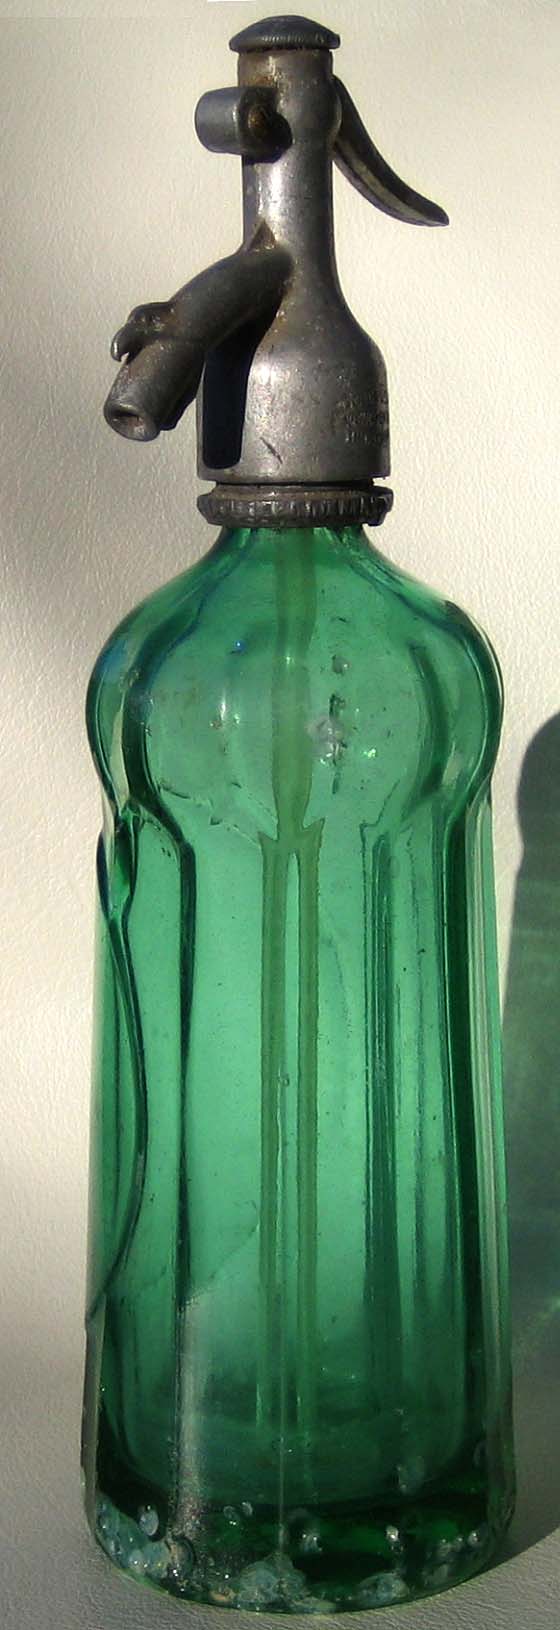 Abb. 2015-3/41-01 Siphon-Flasche, grünes, press-geblasenes Glas im Boden geätzte Marke mit 2 gekreuzten J Verschluss gemarkt mit LEHOCZKY MIHALY / NAGYLAK und?